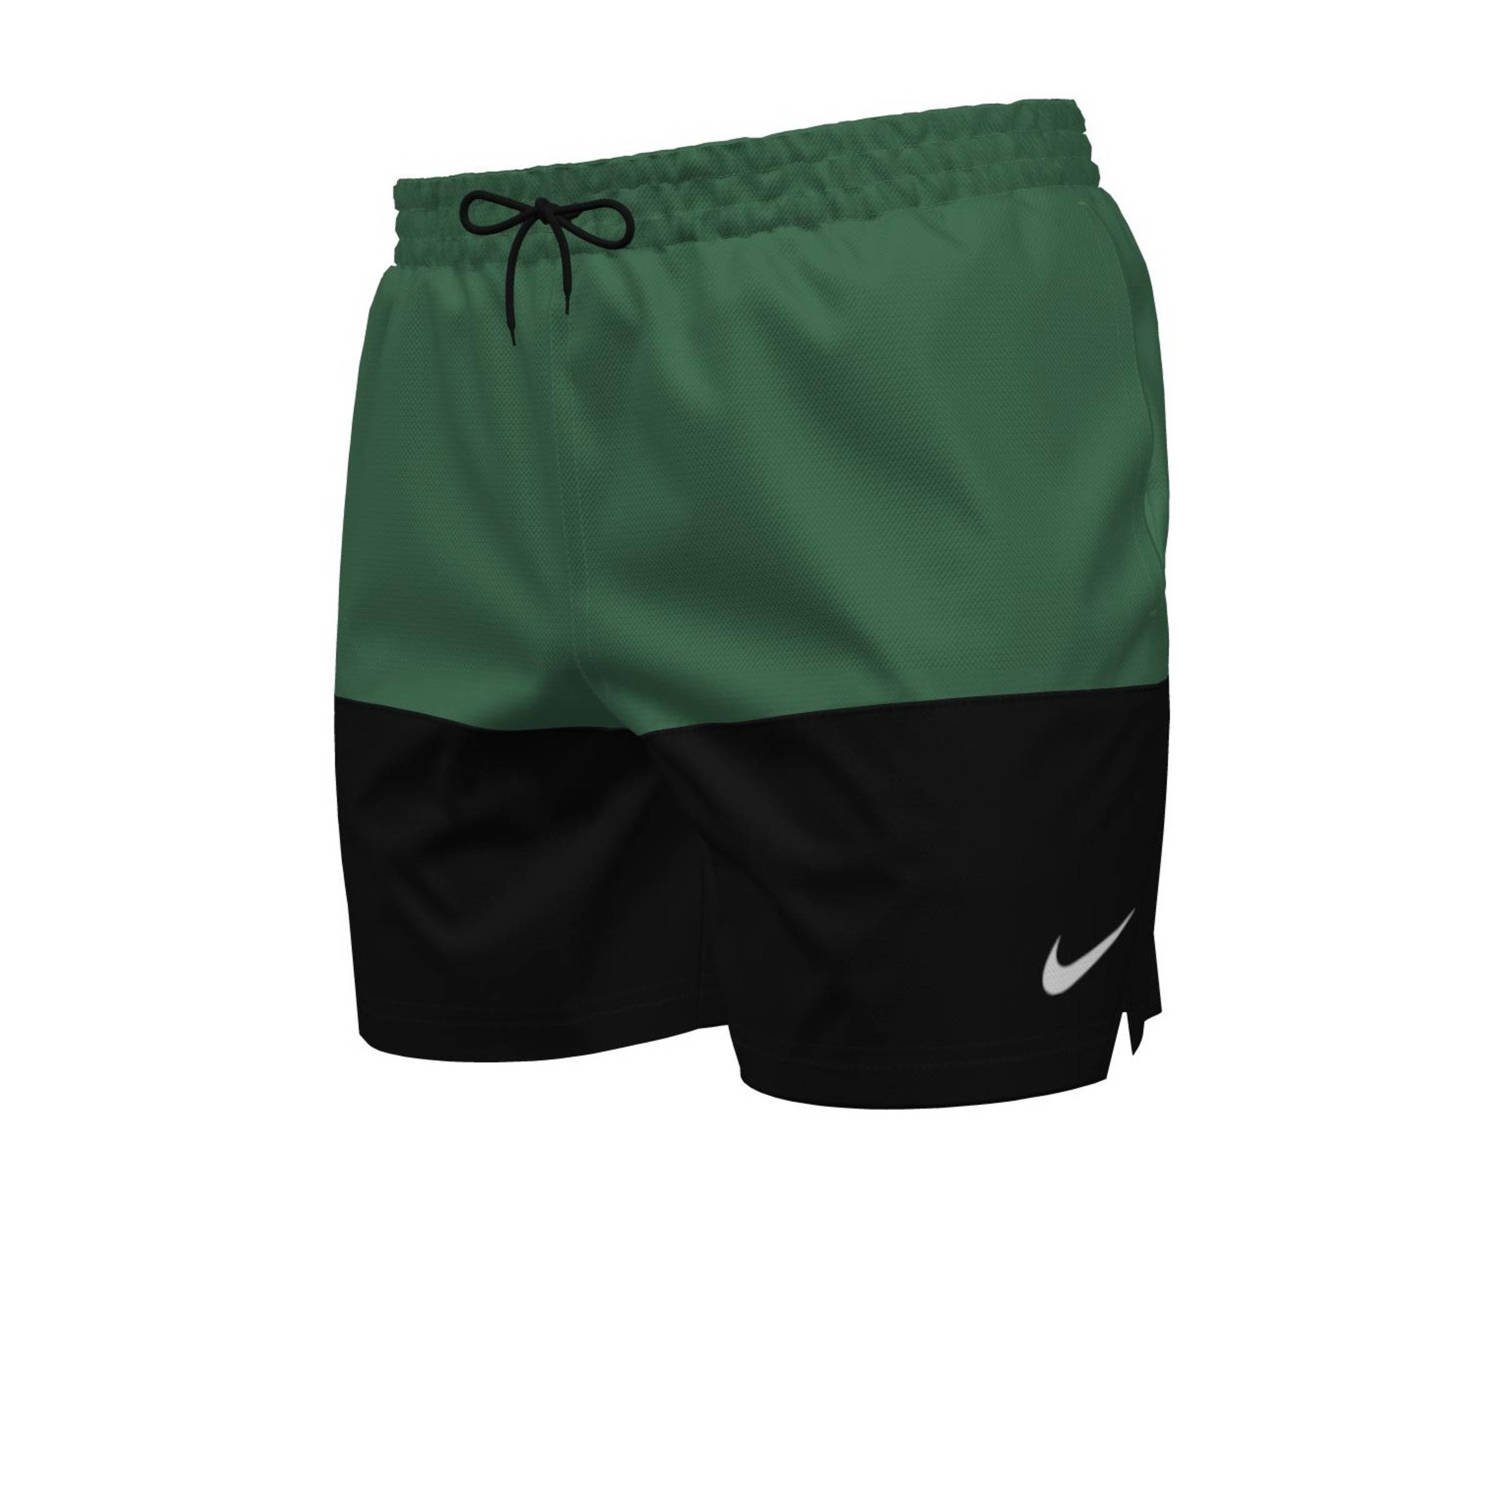 Nike zwemshort Split groen zwart